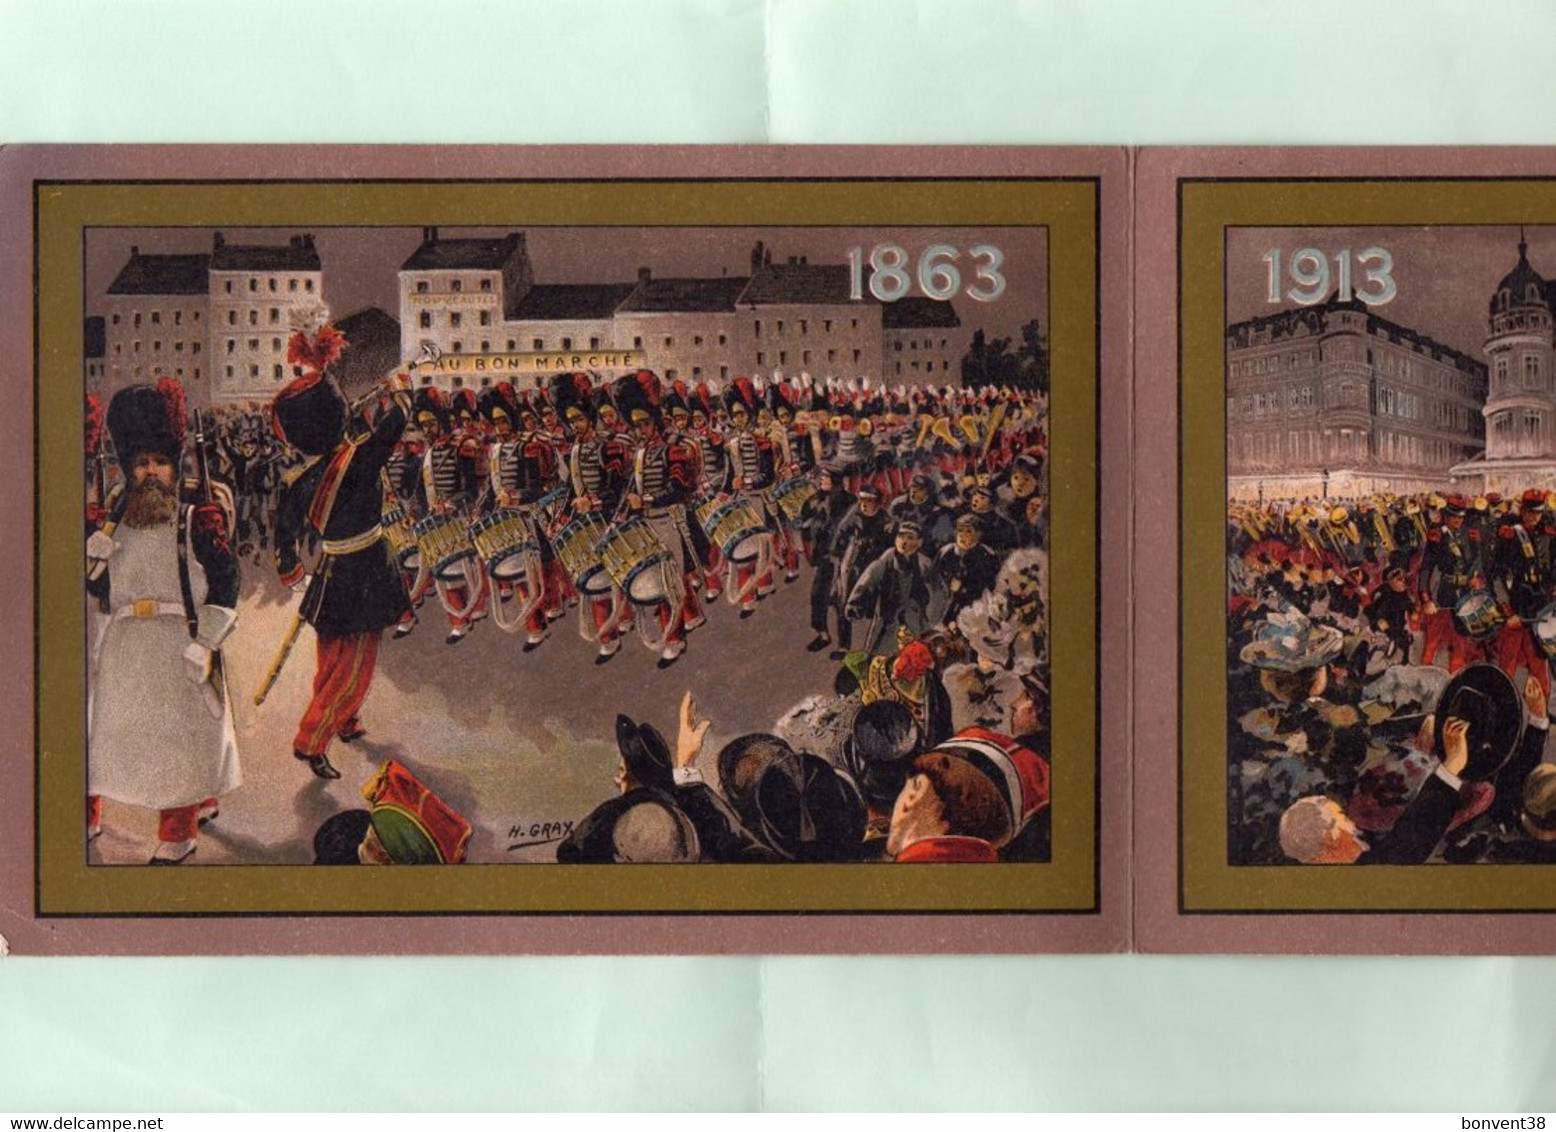 I0601 - PARIS - AU BON MARCHE - Maison A. BOUCICAUT - Feuillet - Illustrateur H. GRAY - Militaire - 1863/1913 - Advertising